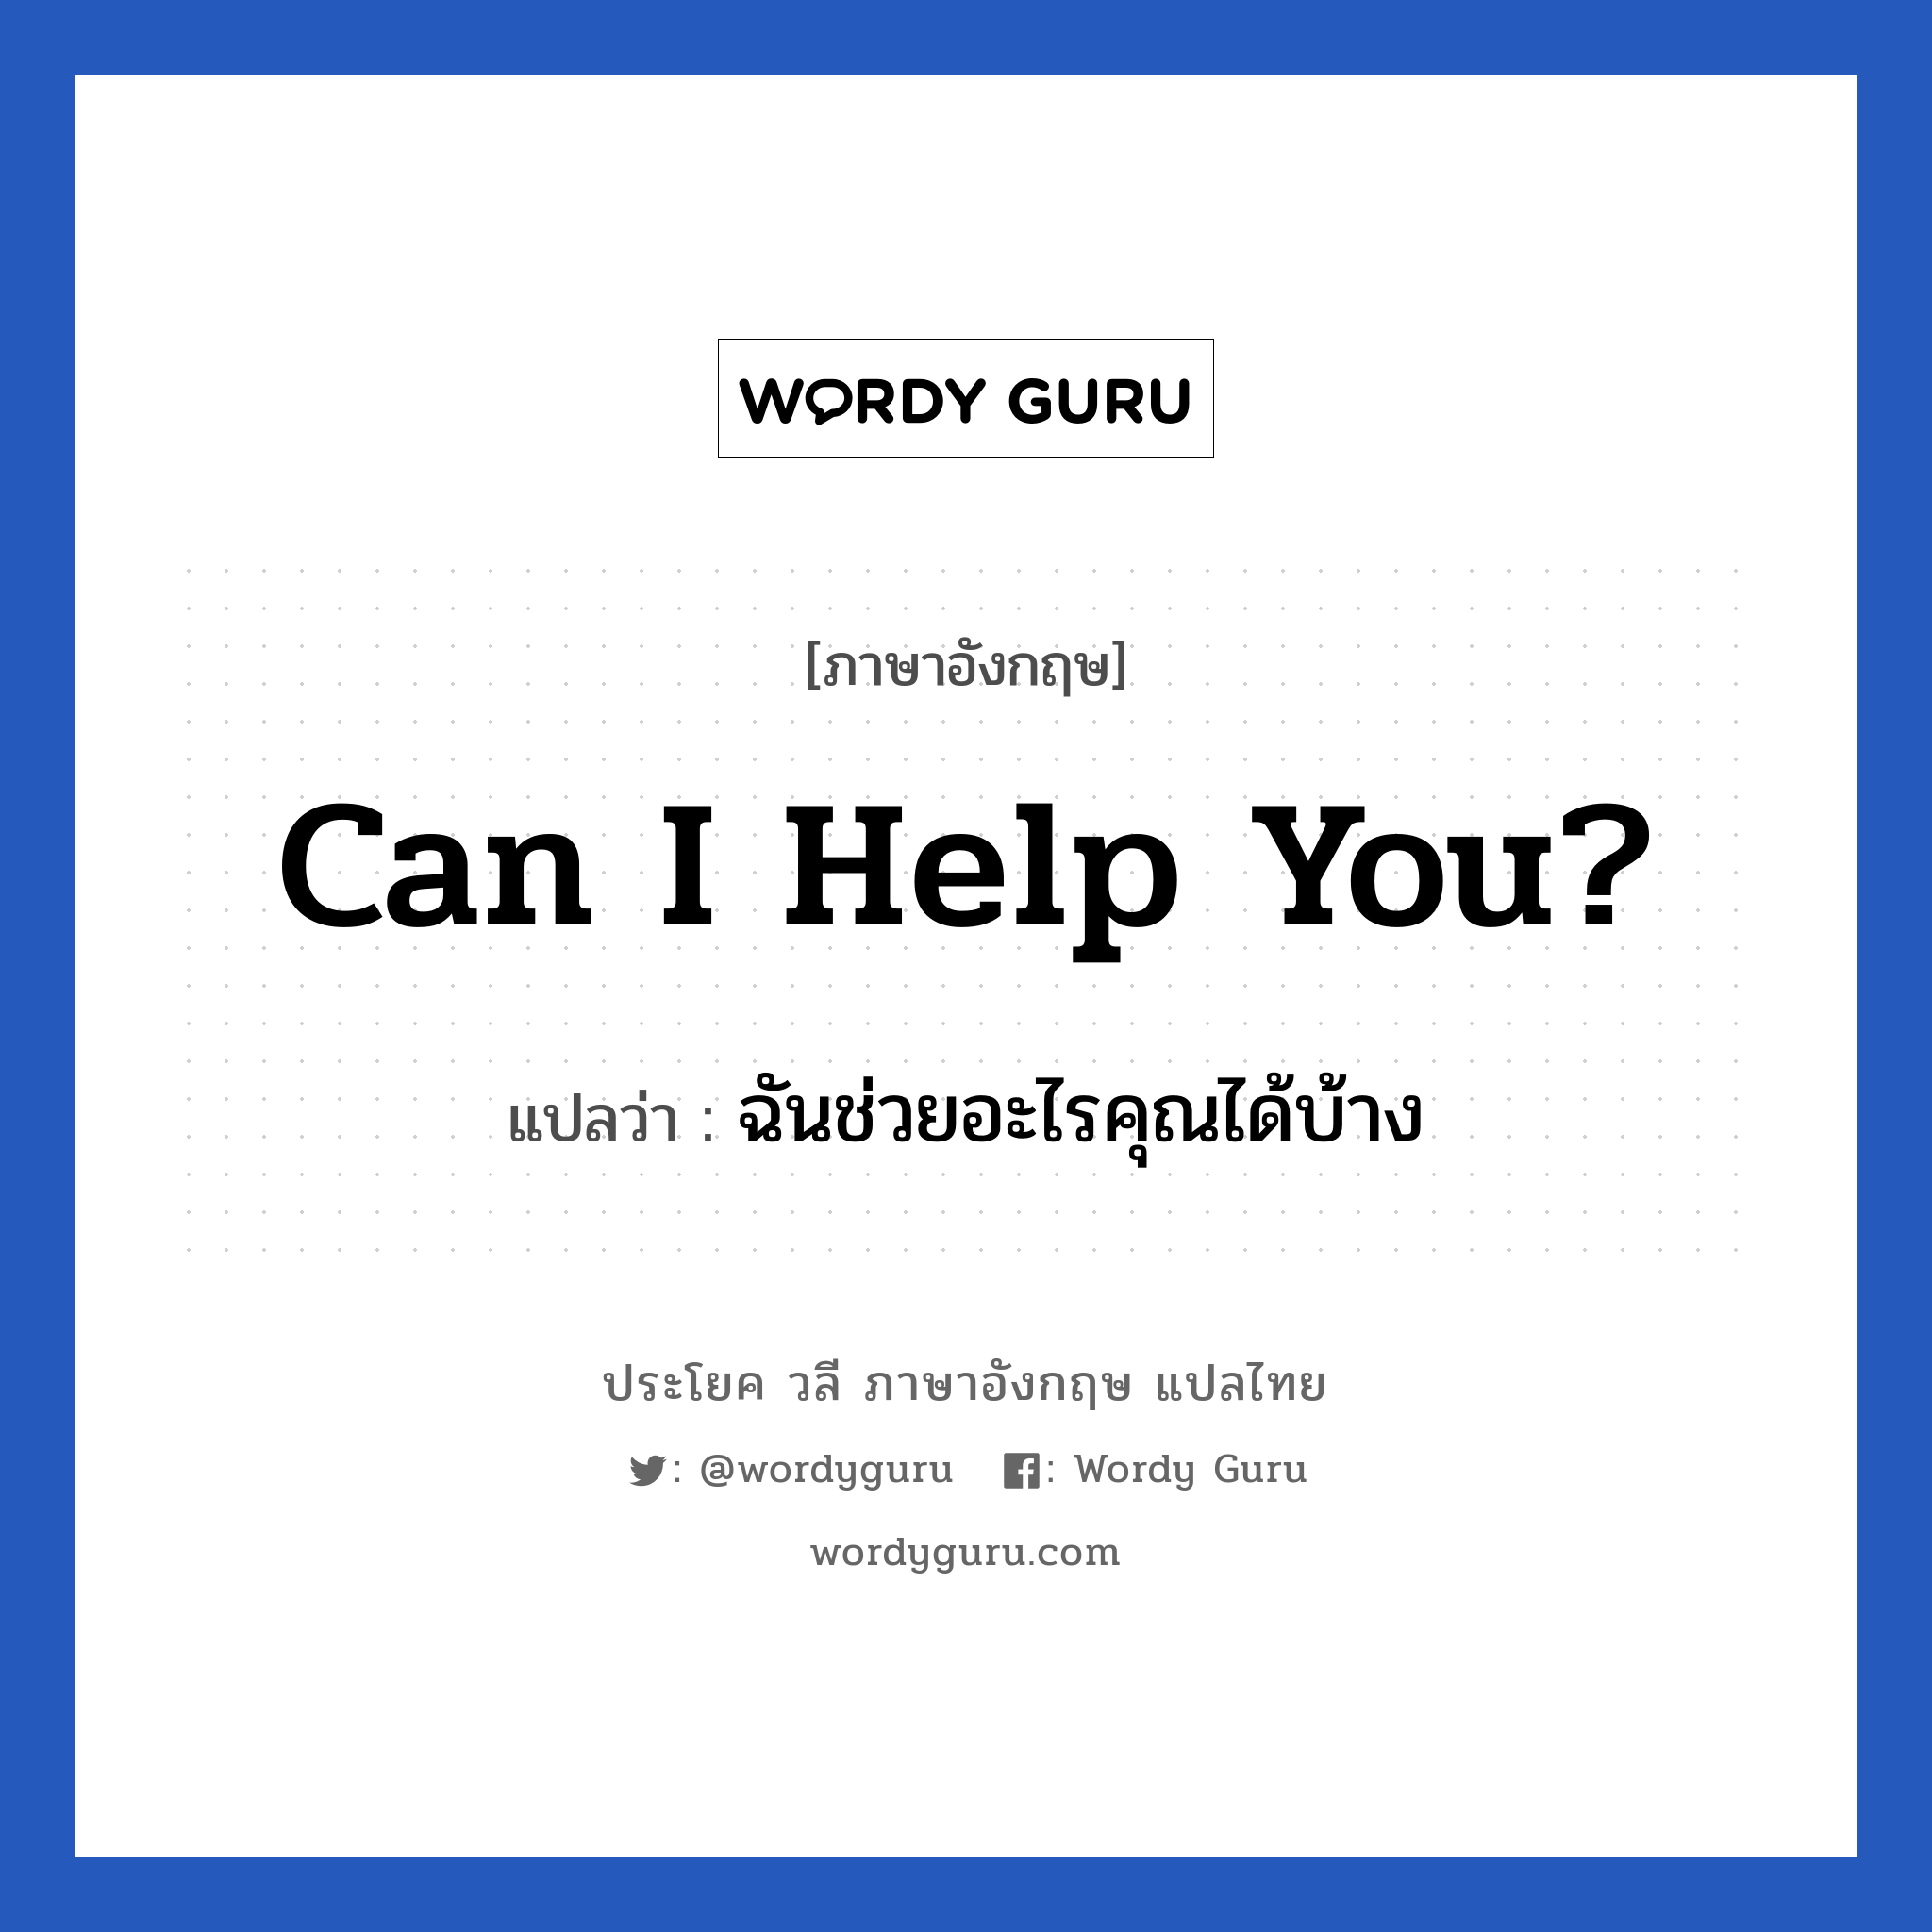 ฉันช่วยอะไรคุณได้บ้าง ภาษาอังกฤษ?, วลีภาษาอังกฤษ ฉันช่วยอะไรคุณได้บ้าง แปลว่า Can I help you?